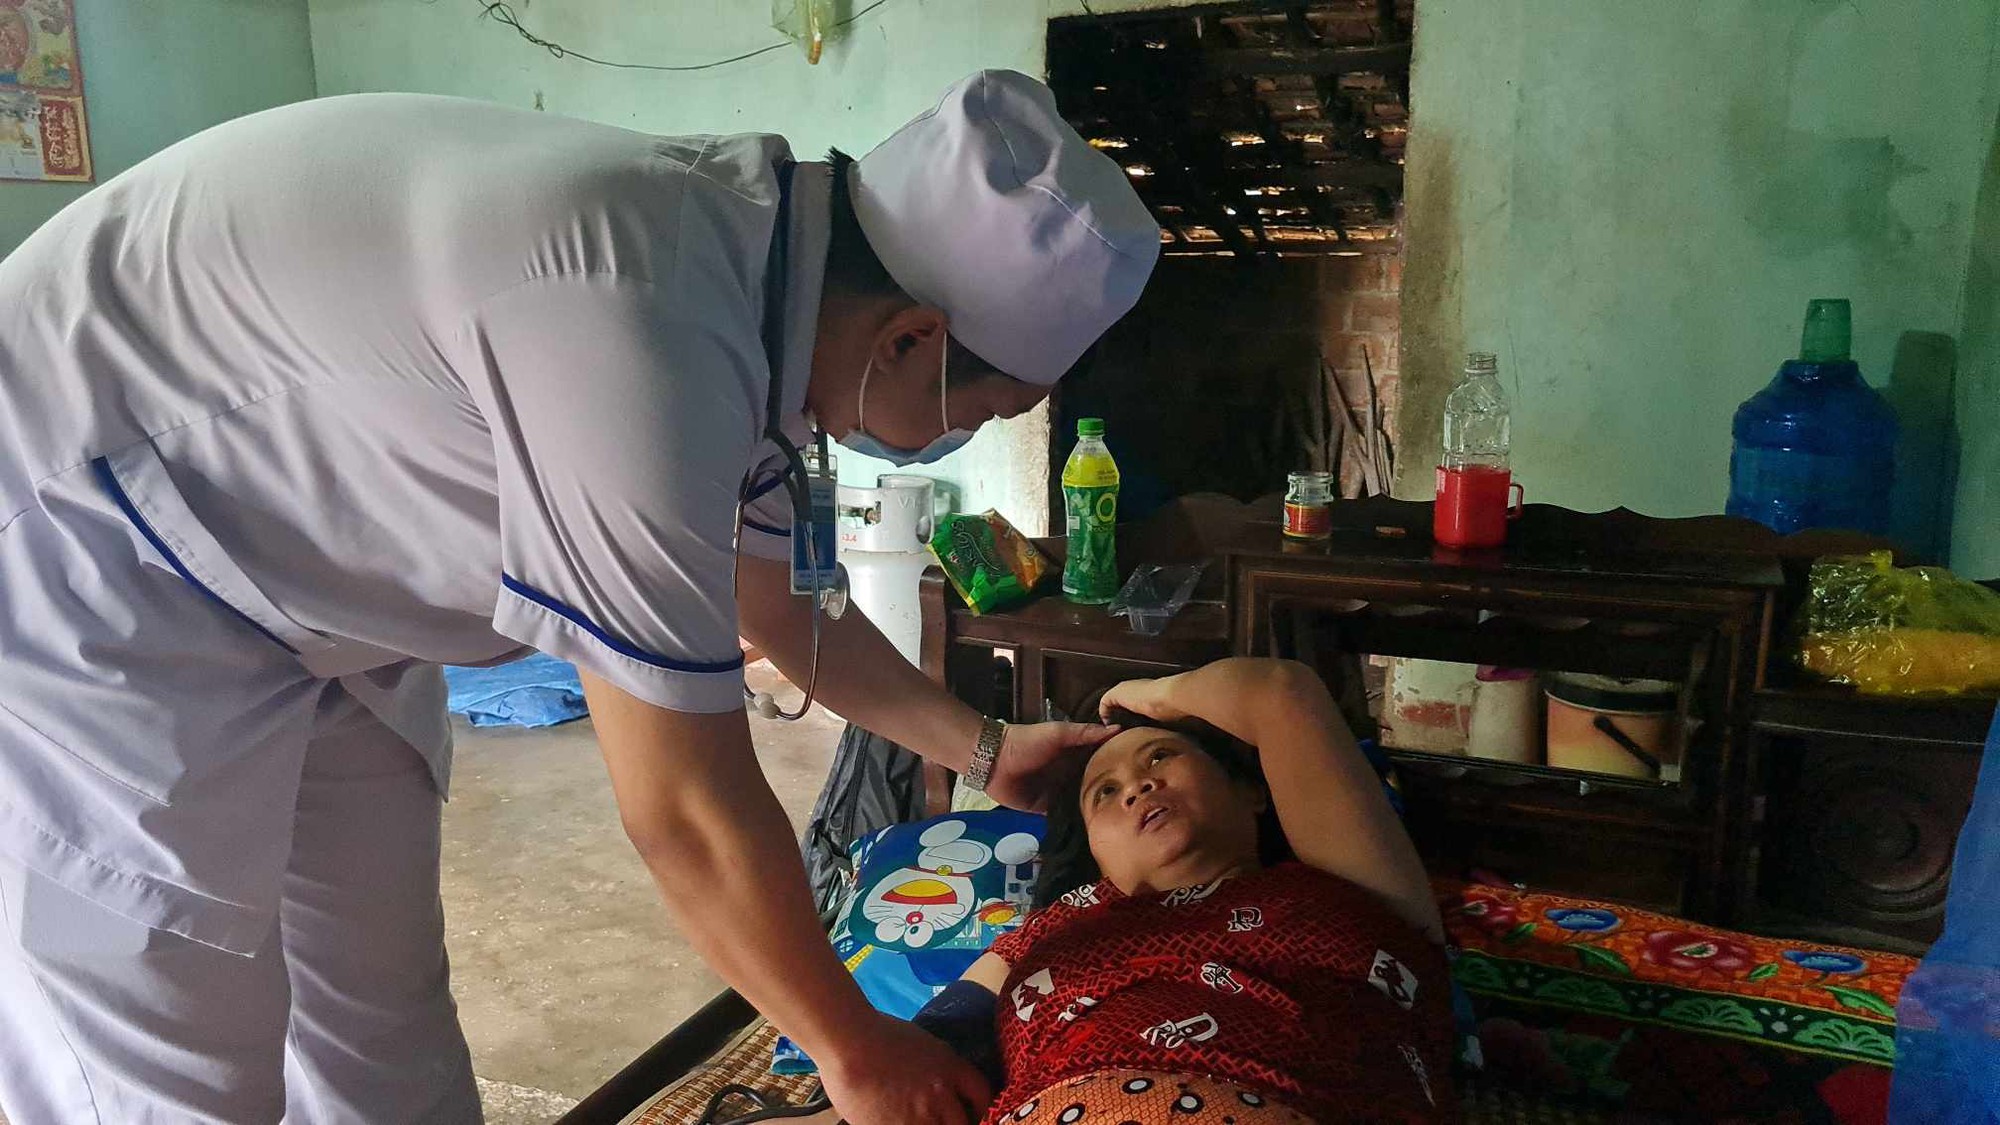 Mẹ của bé gái nhặt ve chai được đưa đến bệnh viện điều trị miễn phí, hàng xóm xúc động: 